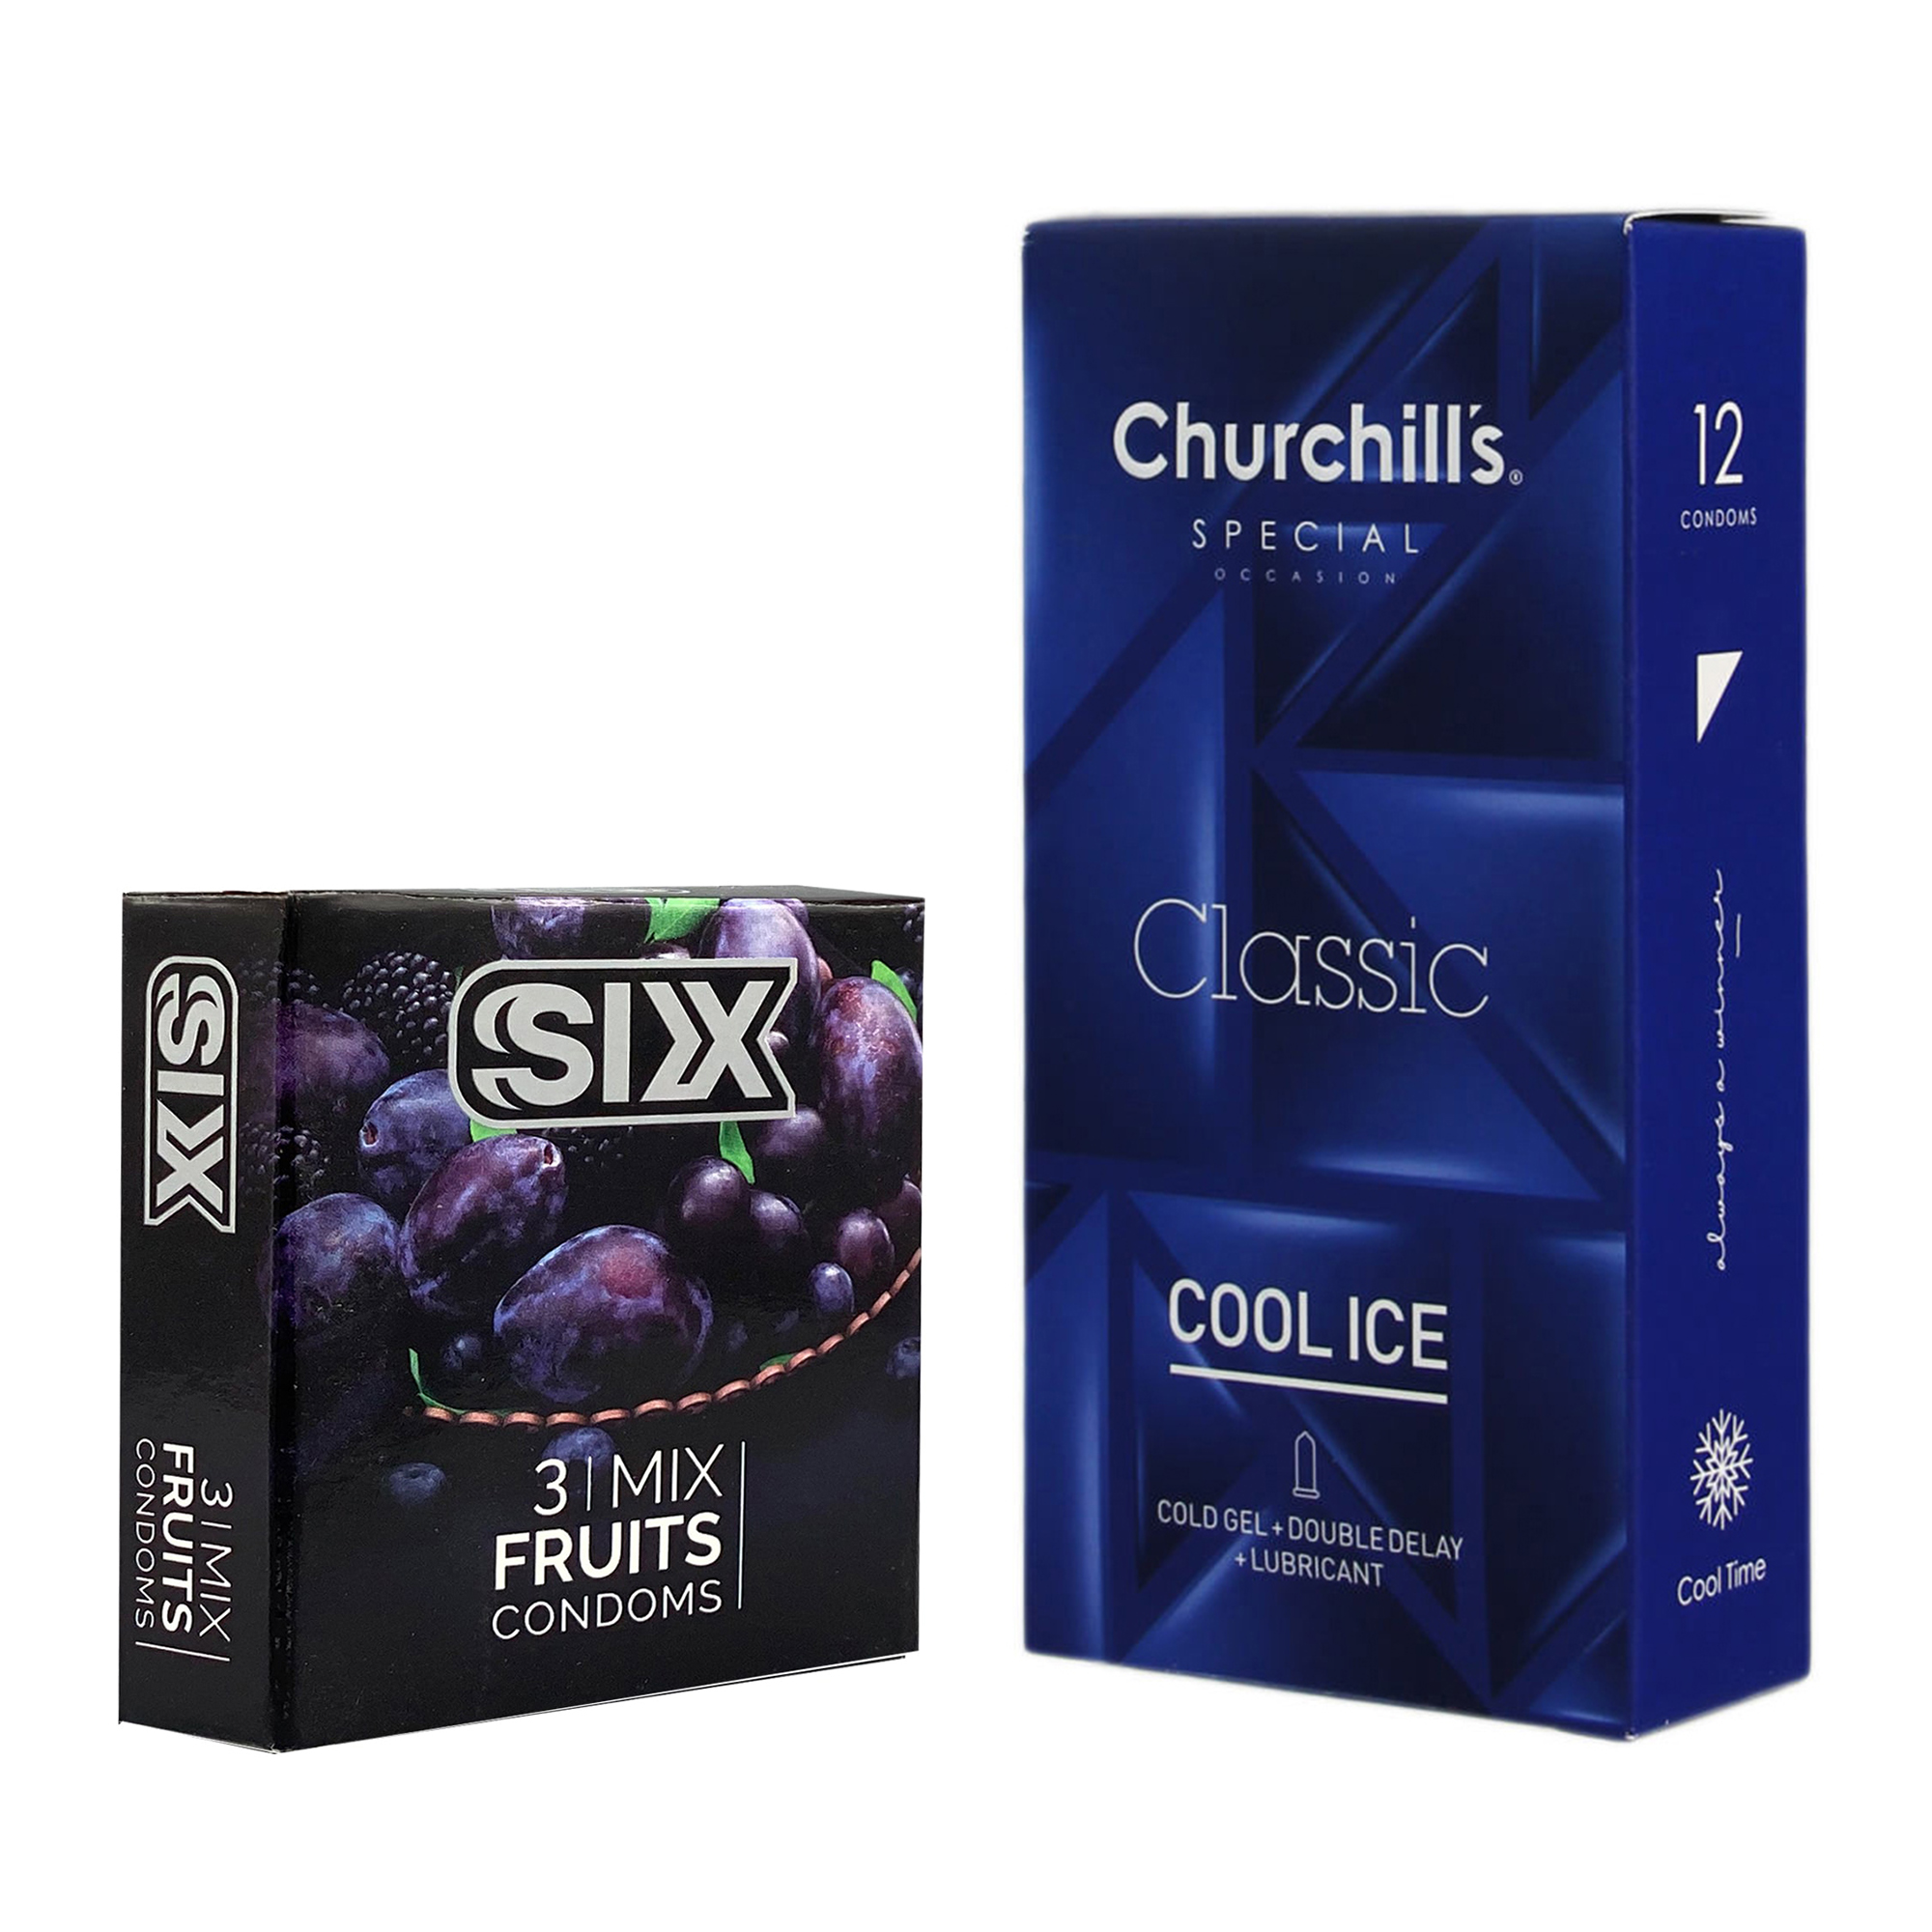 کاندوم چرچیلز مدل Cool Ice بسته 12 عددی به همراه کاندوم سیکس مدل میوه ای بسته 3 عددی 